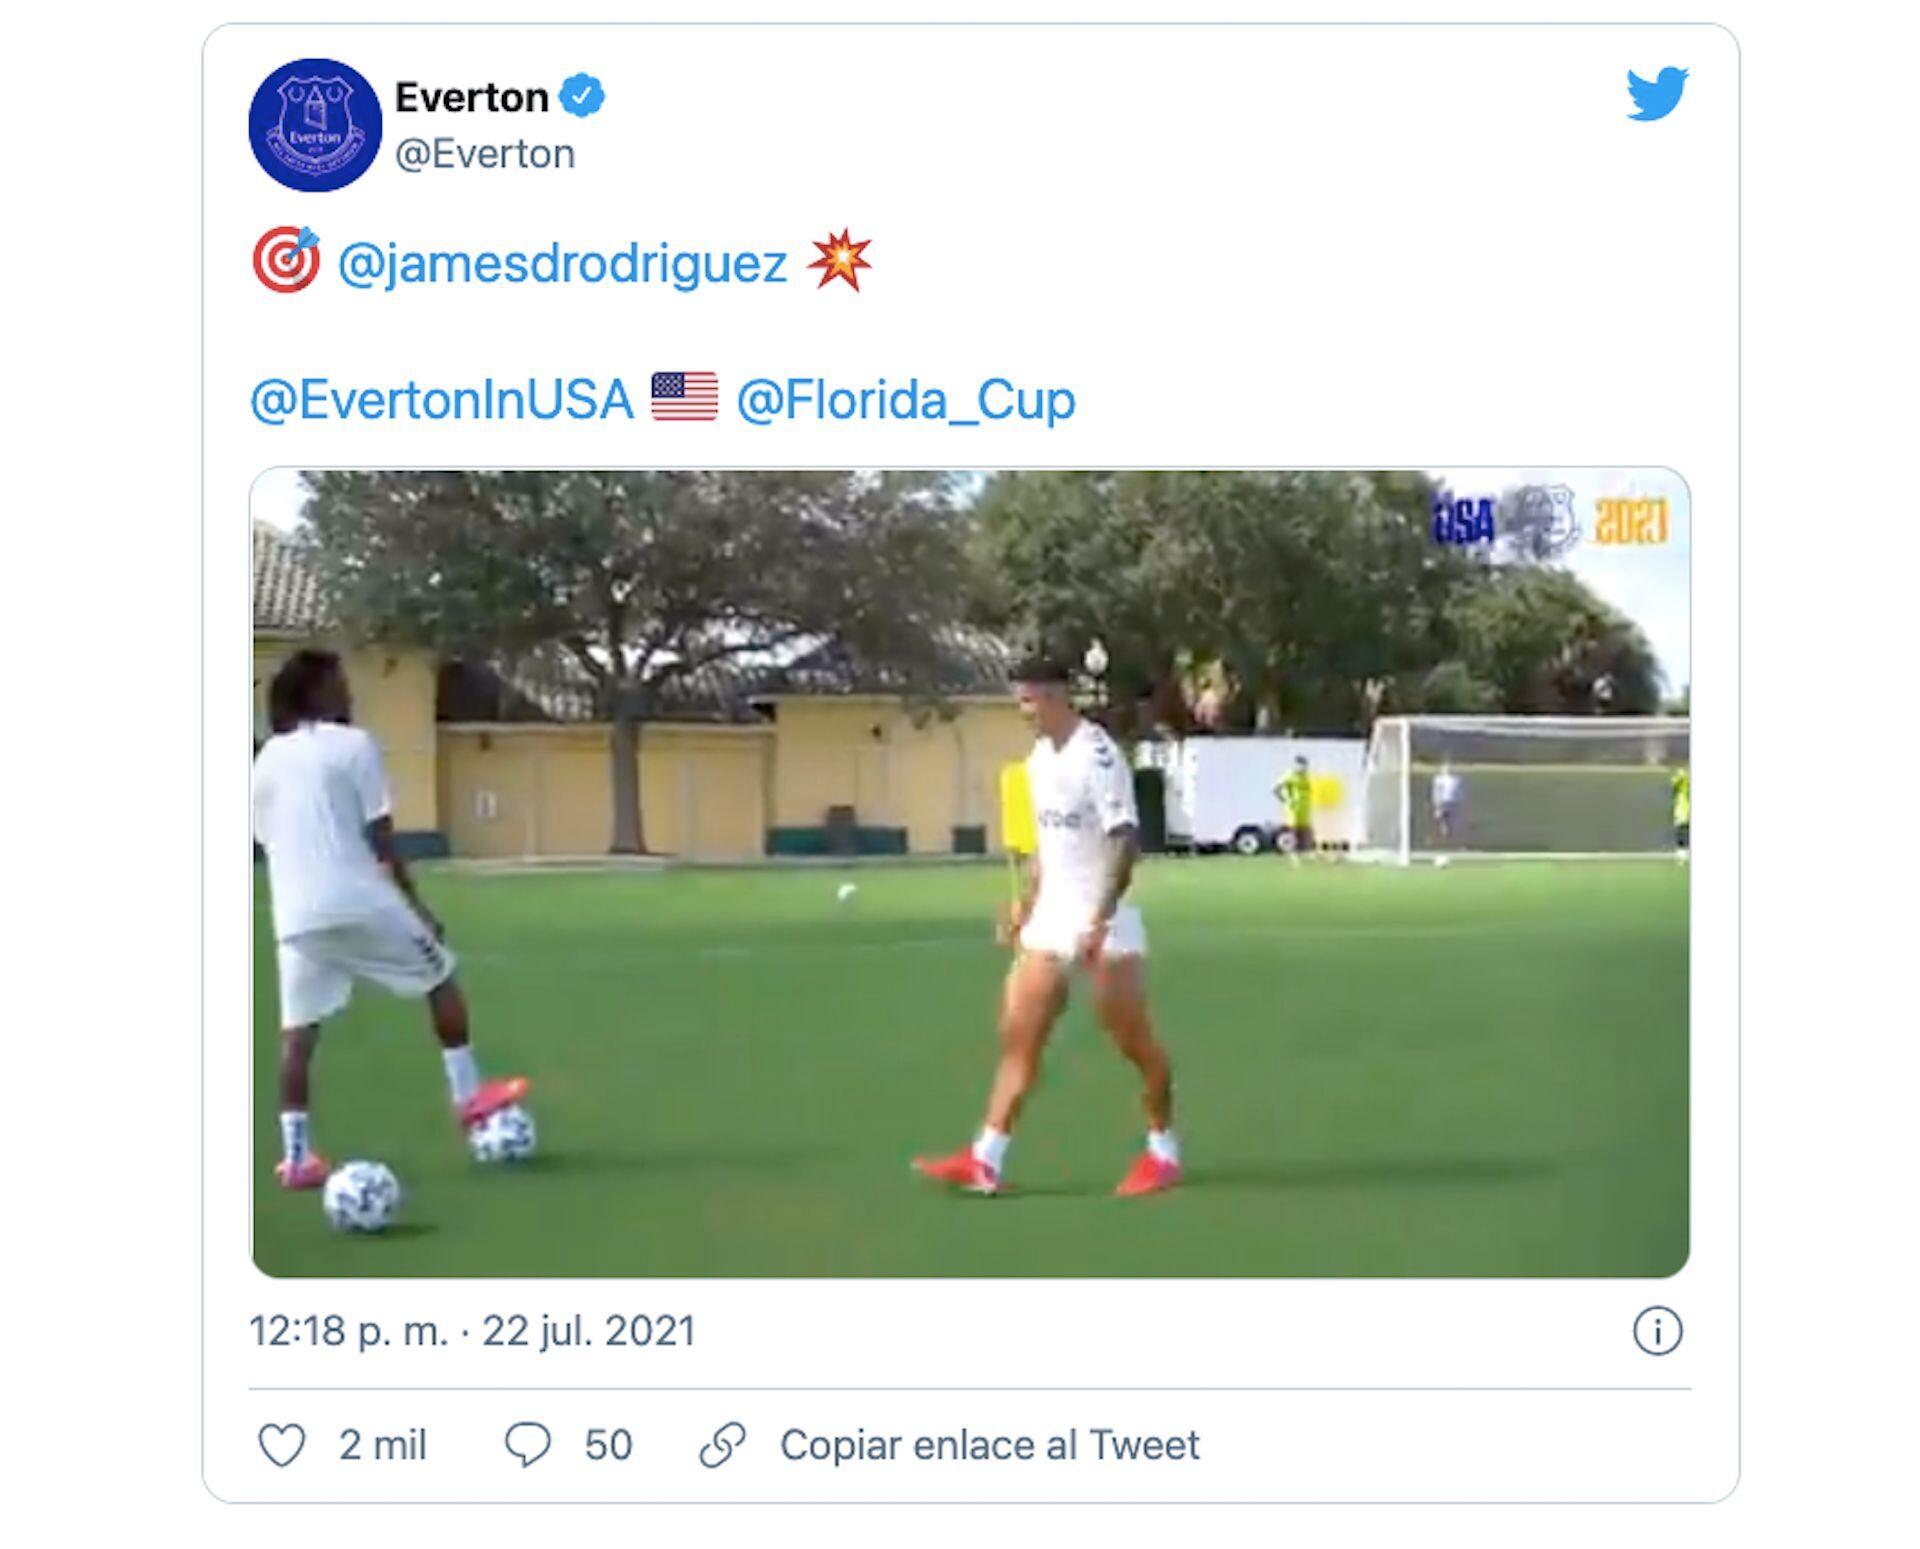 En su cuenta de Twitter, Everton FC destacó el golazo de pretemporada en un entrenamiento de James Rodríguez este 22 de julio previo al arranque de la Florida Cup 2021 contra Millonarios FC de Colombia / (Twitter: @Everton).